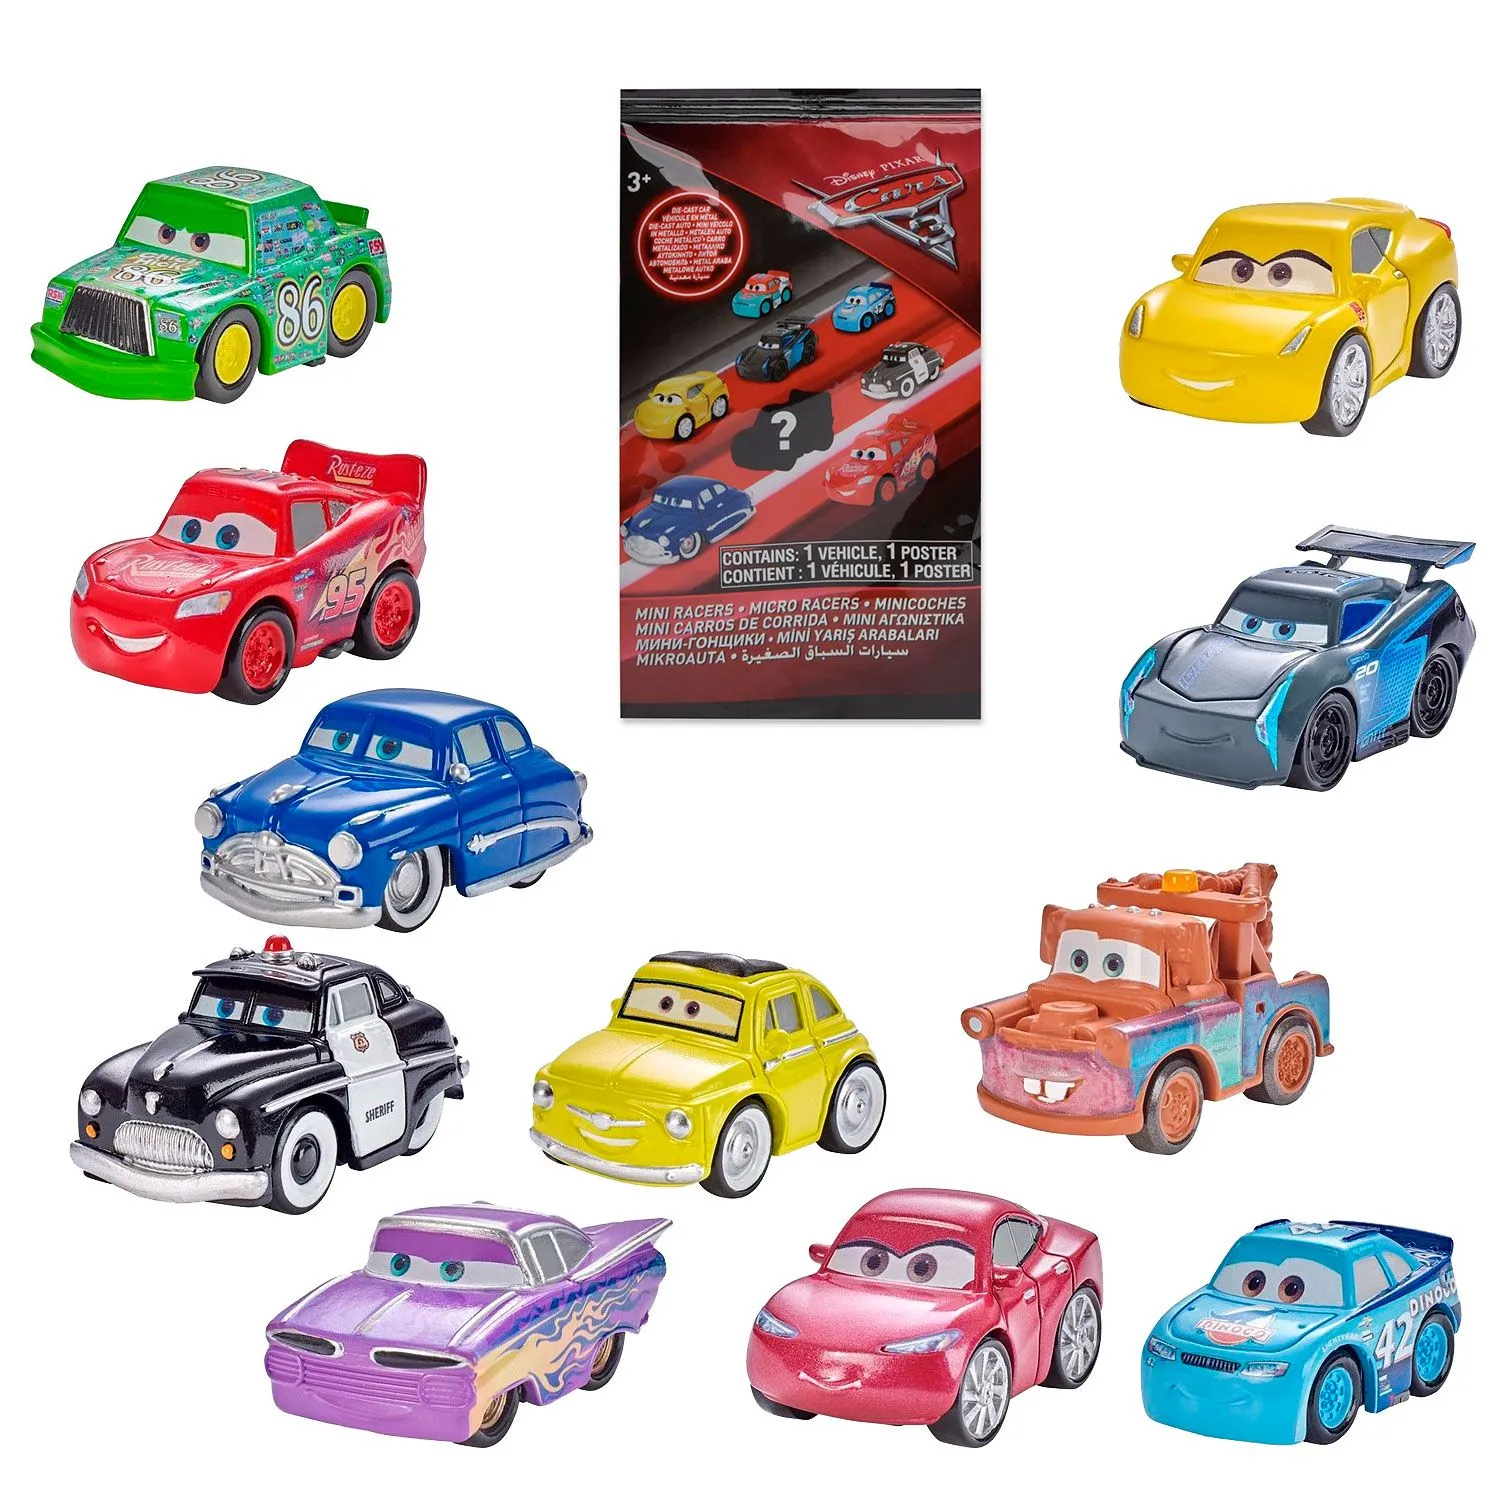 Мини тачки. Джет Робинсон Тачки 3. Mattel cars fbg74 мини-машинки. Тачки 3 мини машинки. Тачки 3 игрушки.